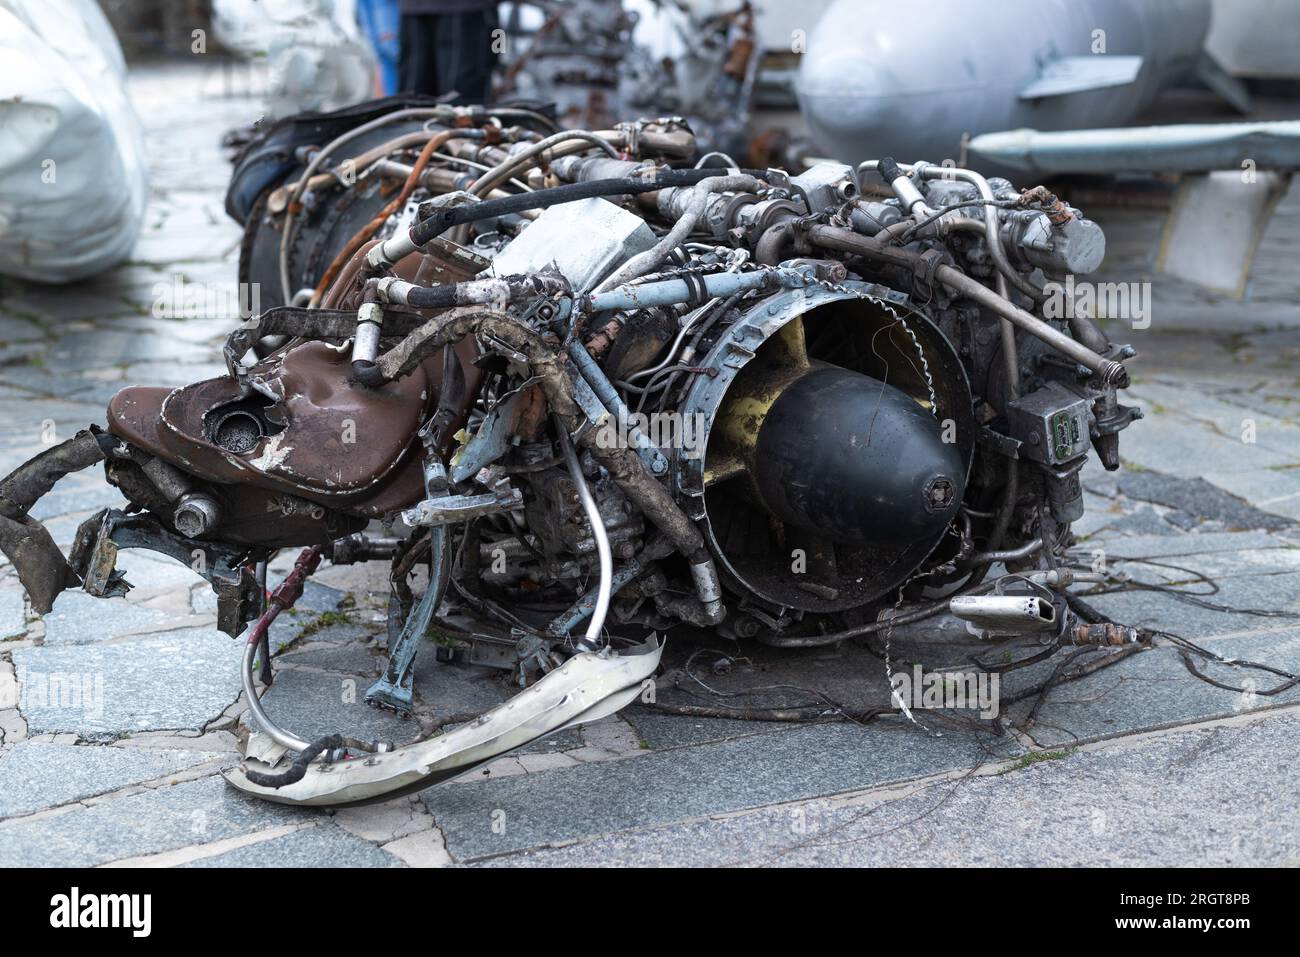 Detail des Mi-24 Hubschraubers. Überreste eines zerstörten Kampfhubschraubers der russischen Luftwaffe Hind Crocodile. Motorrotor, Klingen, Schwanz, Wrackteile Stockfoto